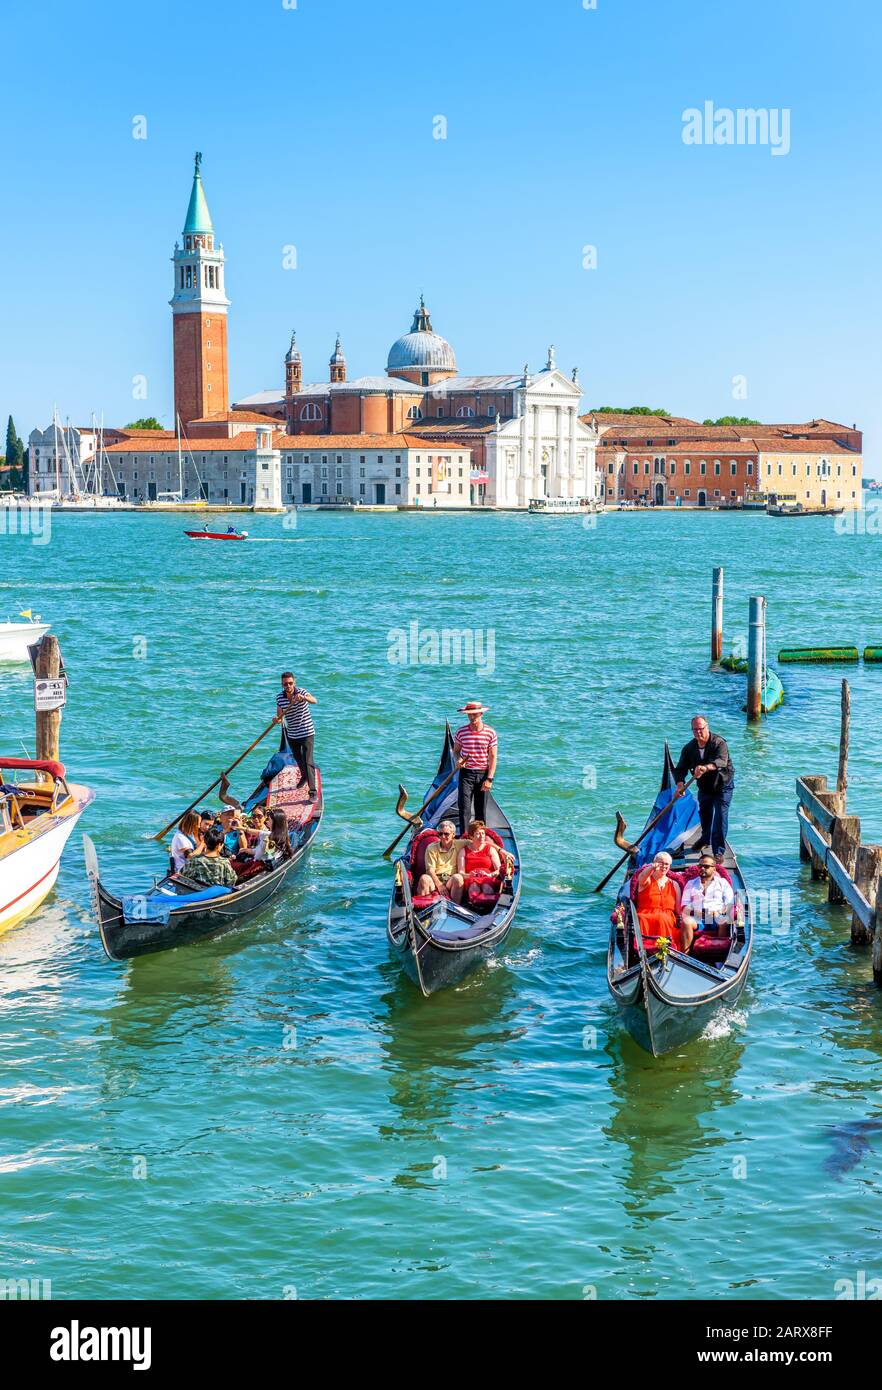 Venedig - 18. Mai 2017: Gondeln fahren gegen die Insel San Giorgio in Venedig, Italien. Die Gondel ist der attraktivste Touristentransport Venedigs. Konz Stockfoto